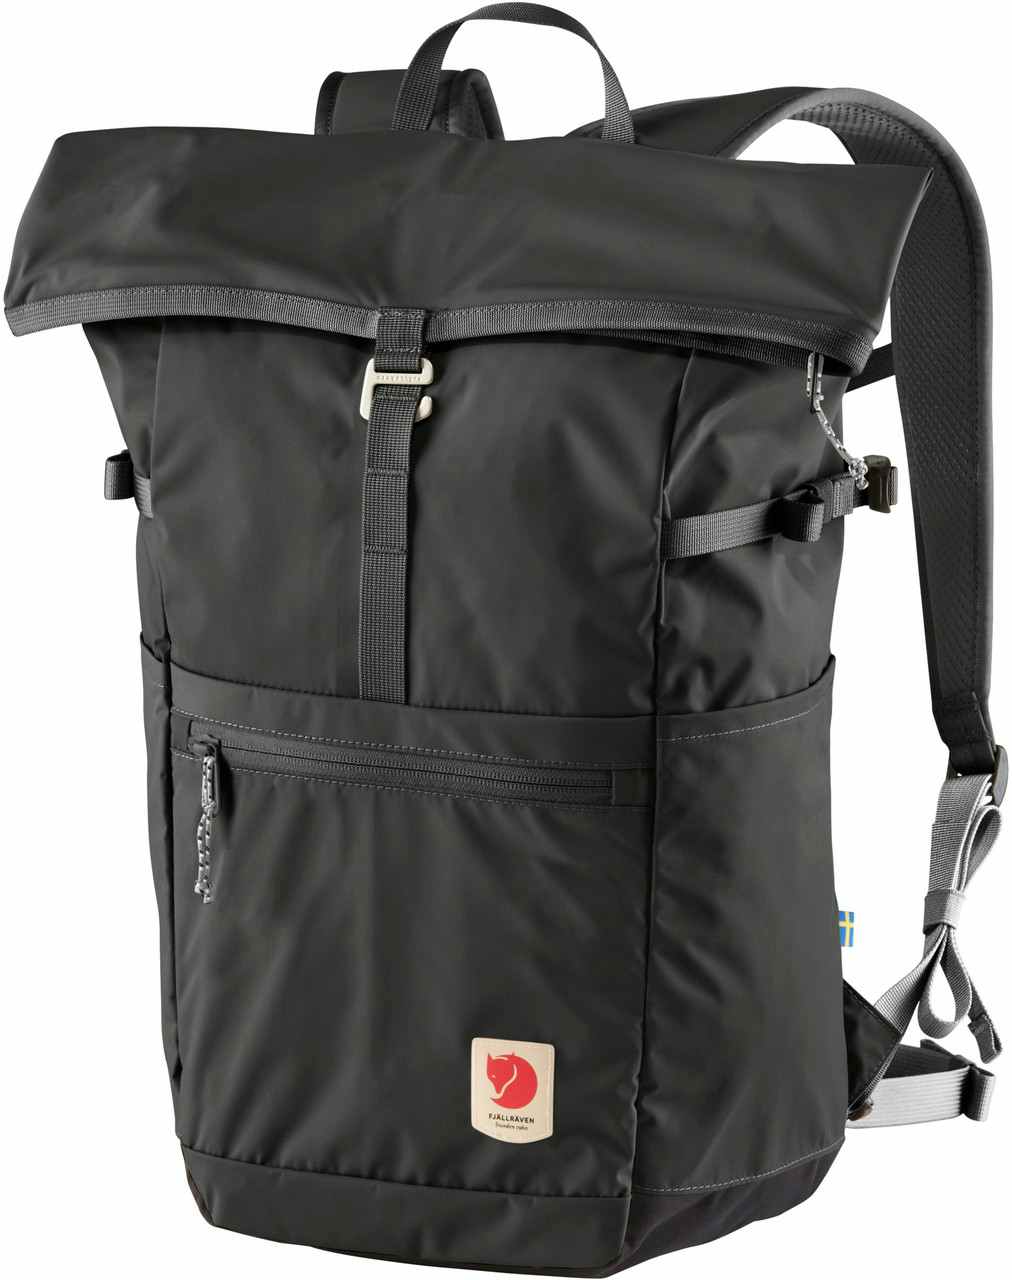 High Coast Foldsack 24 Backpack Dark Grey